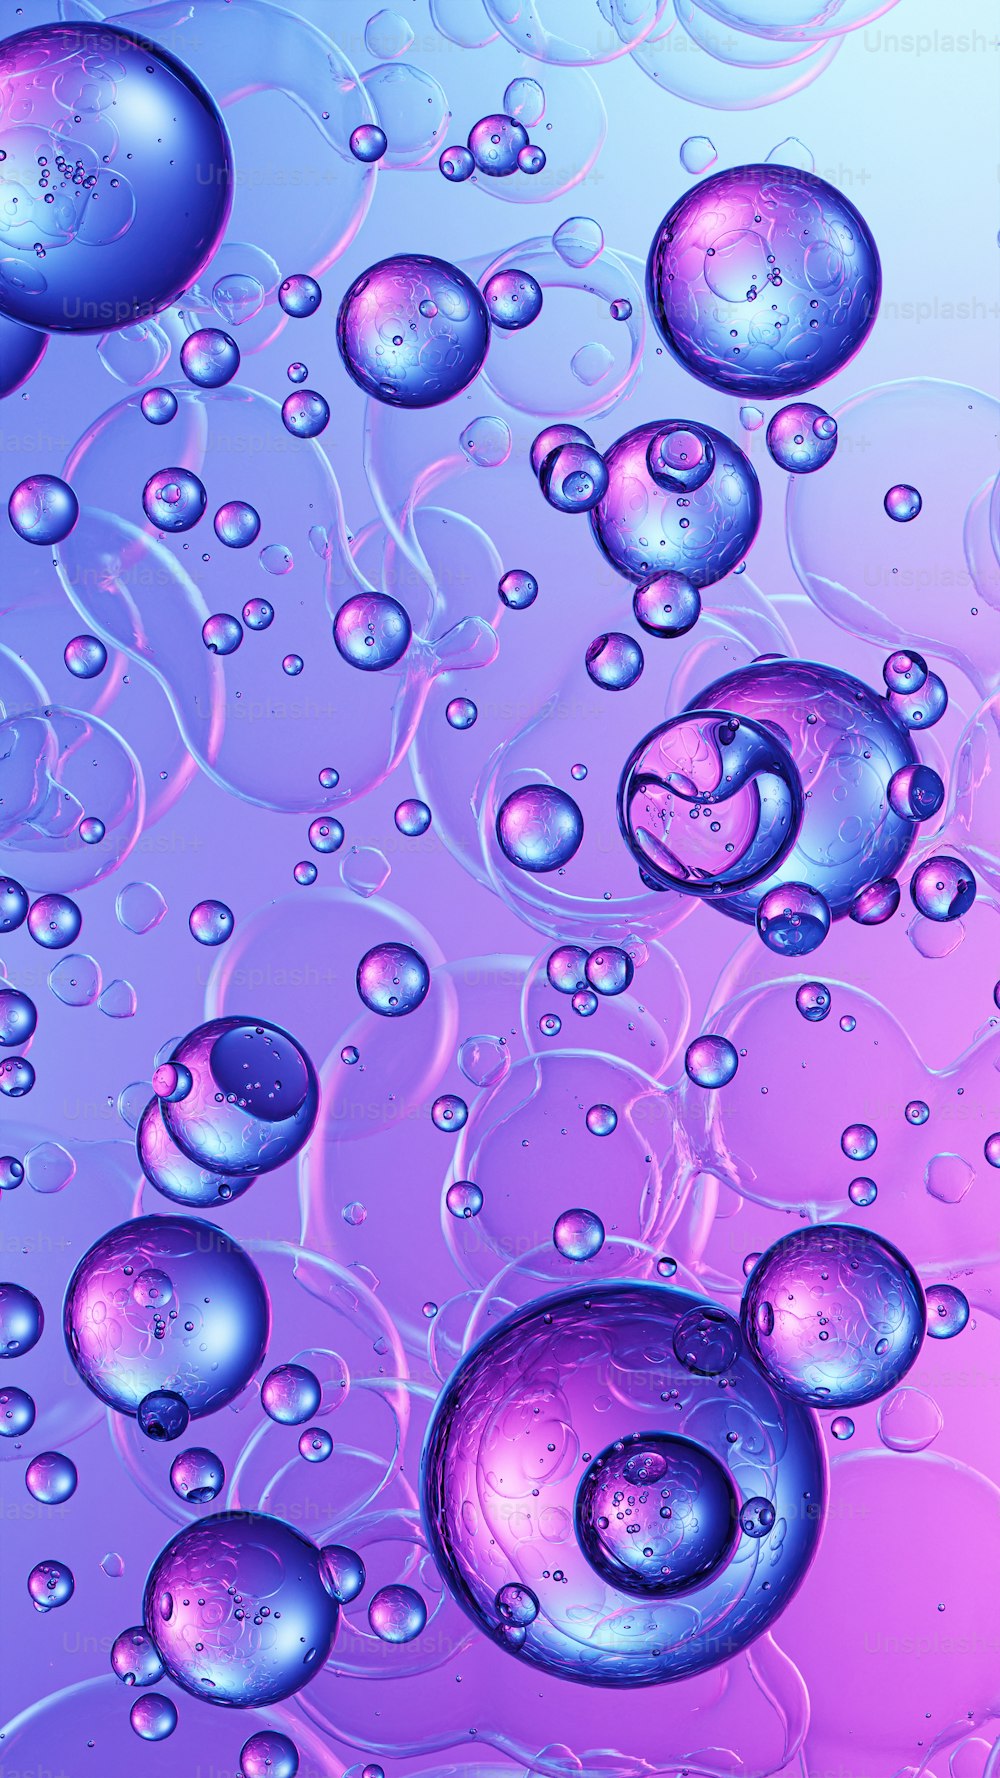 Un primo piano di bolle d'acqua su uno sfondo viola